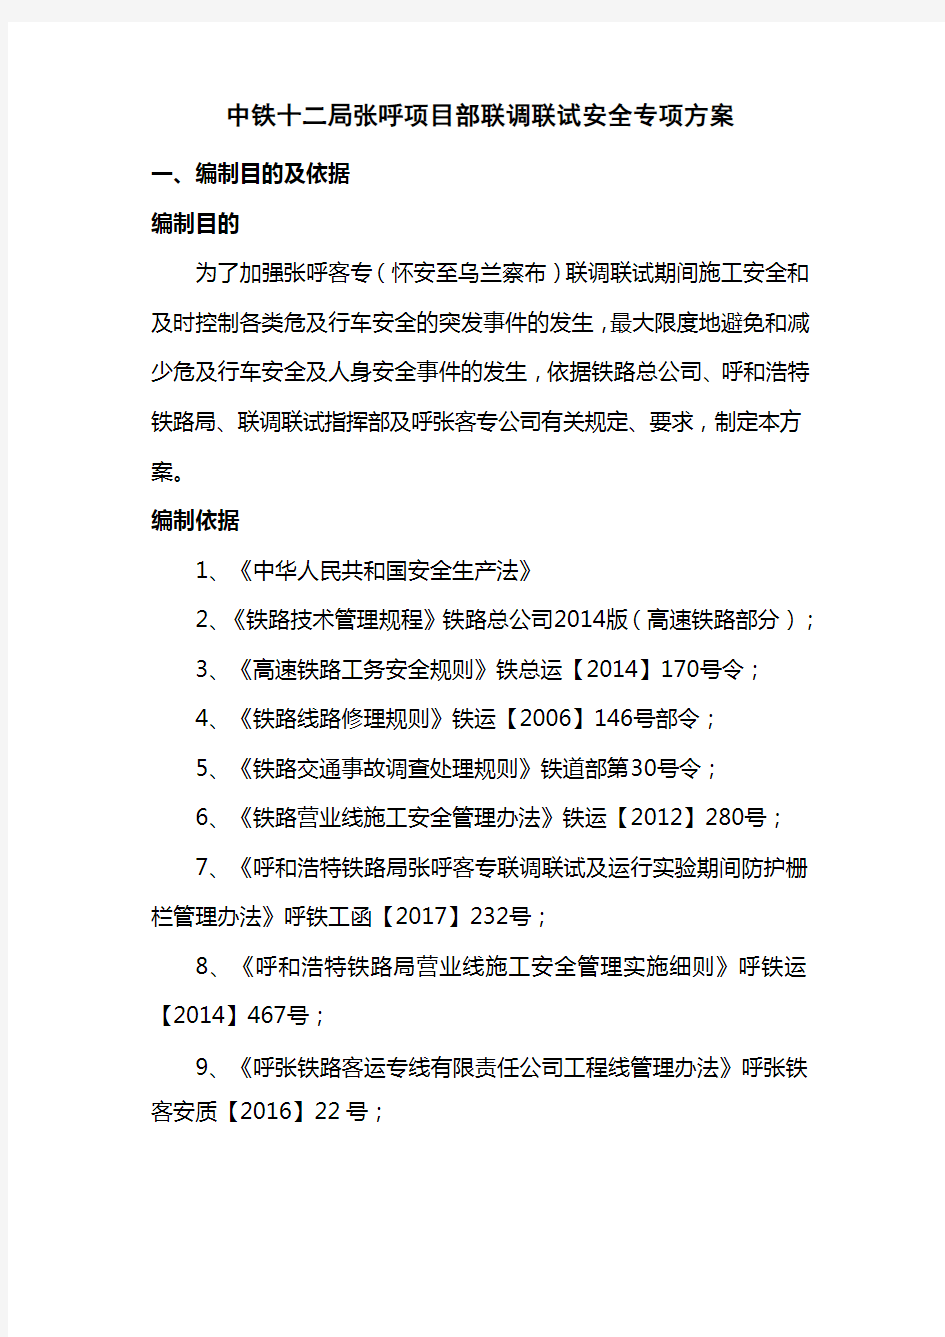 中铁十二局张呼项目部联调联试安全专项方案